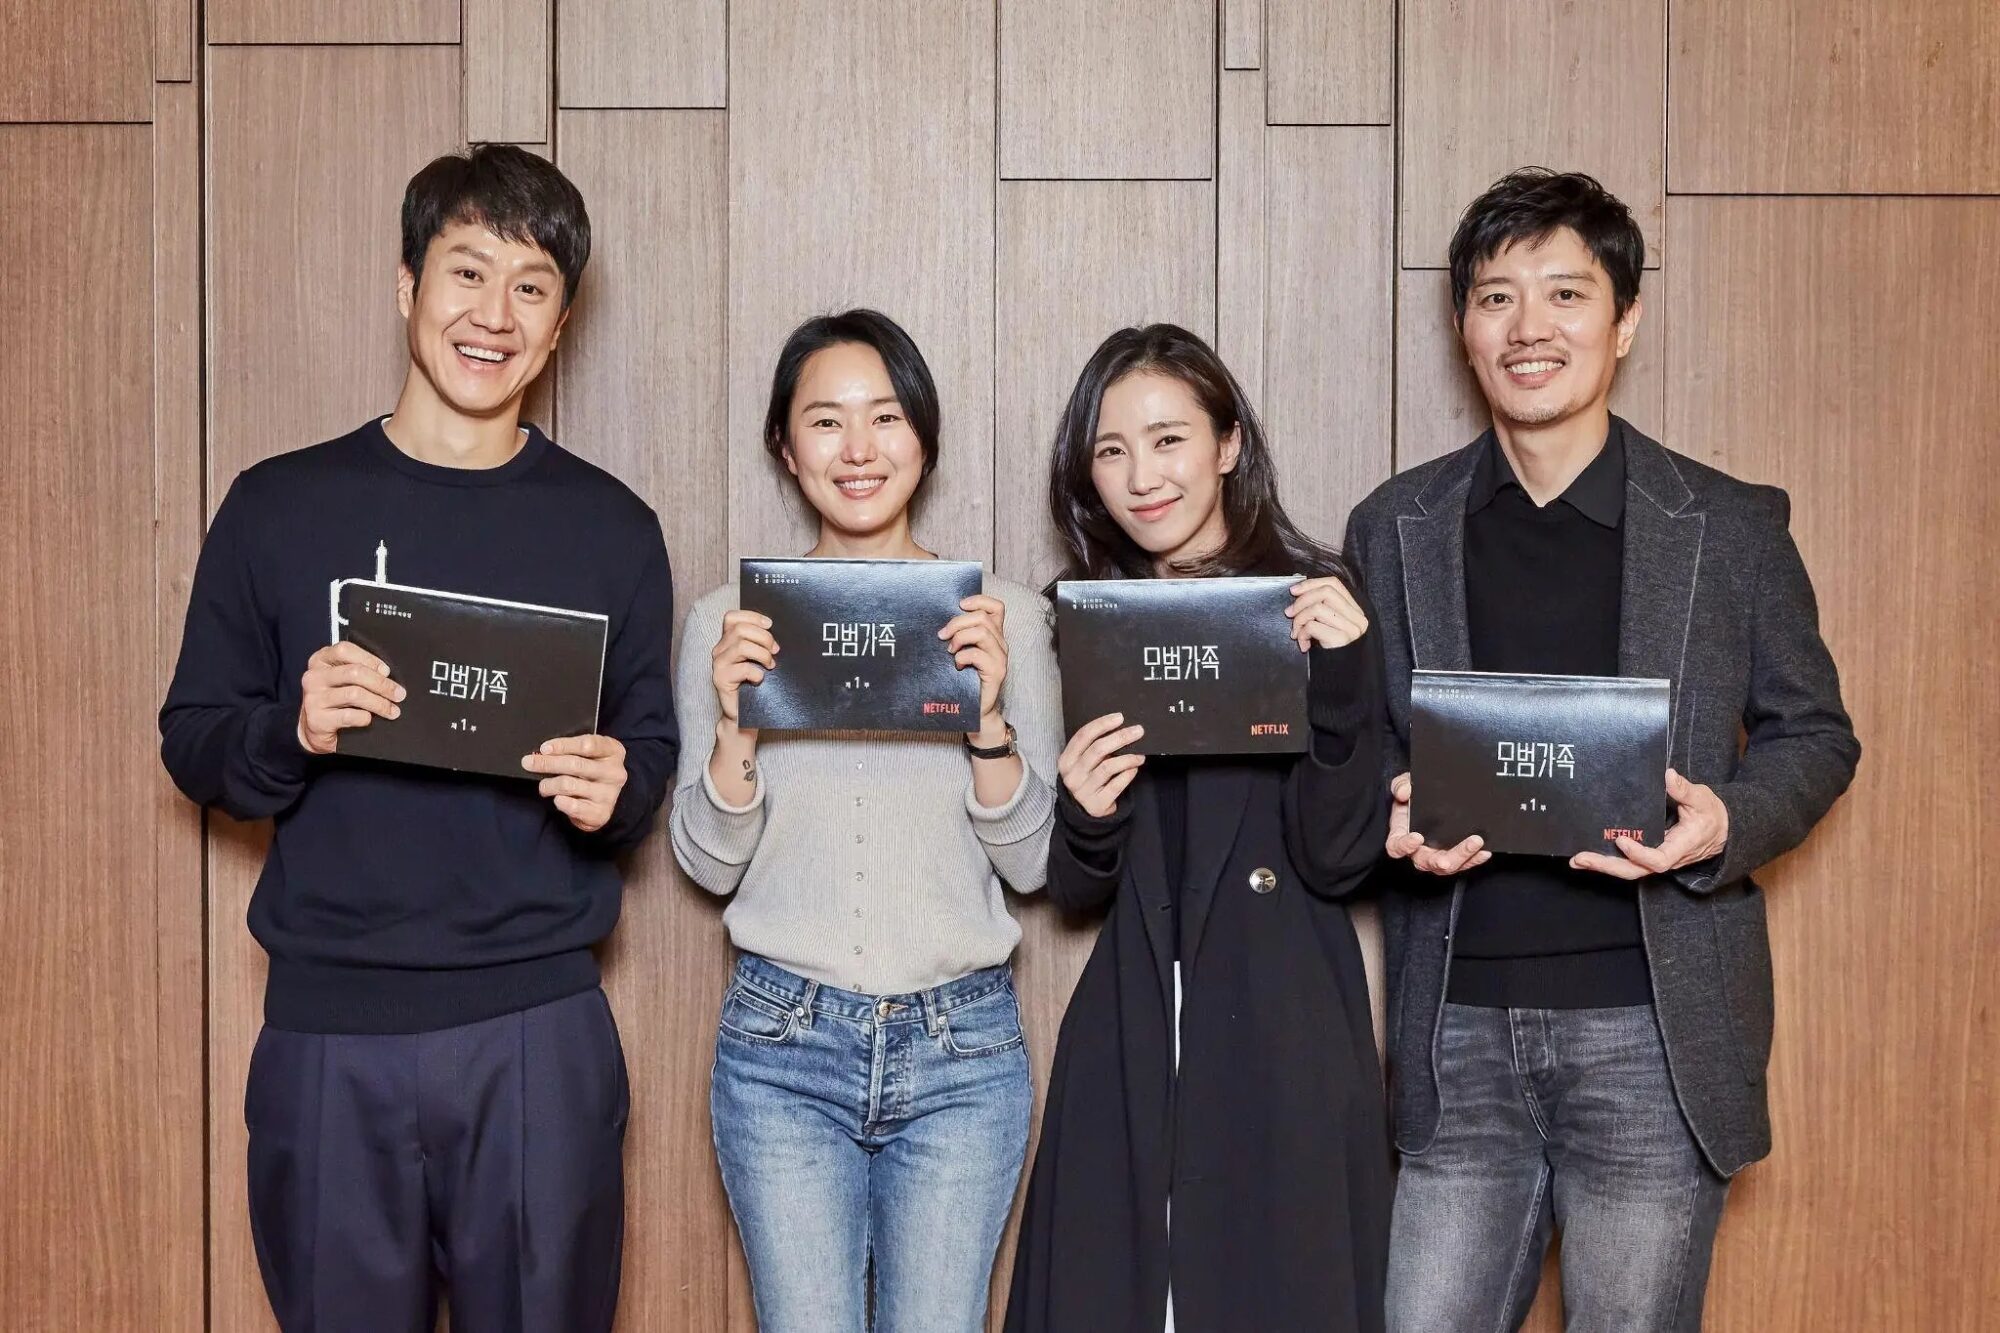 Uma Família Exemplar  Conheça a nova série sul-coreana de